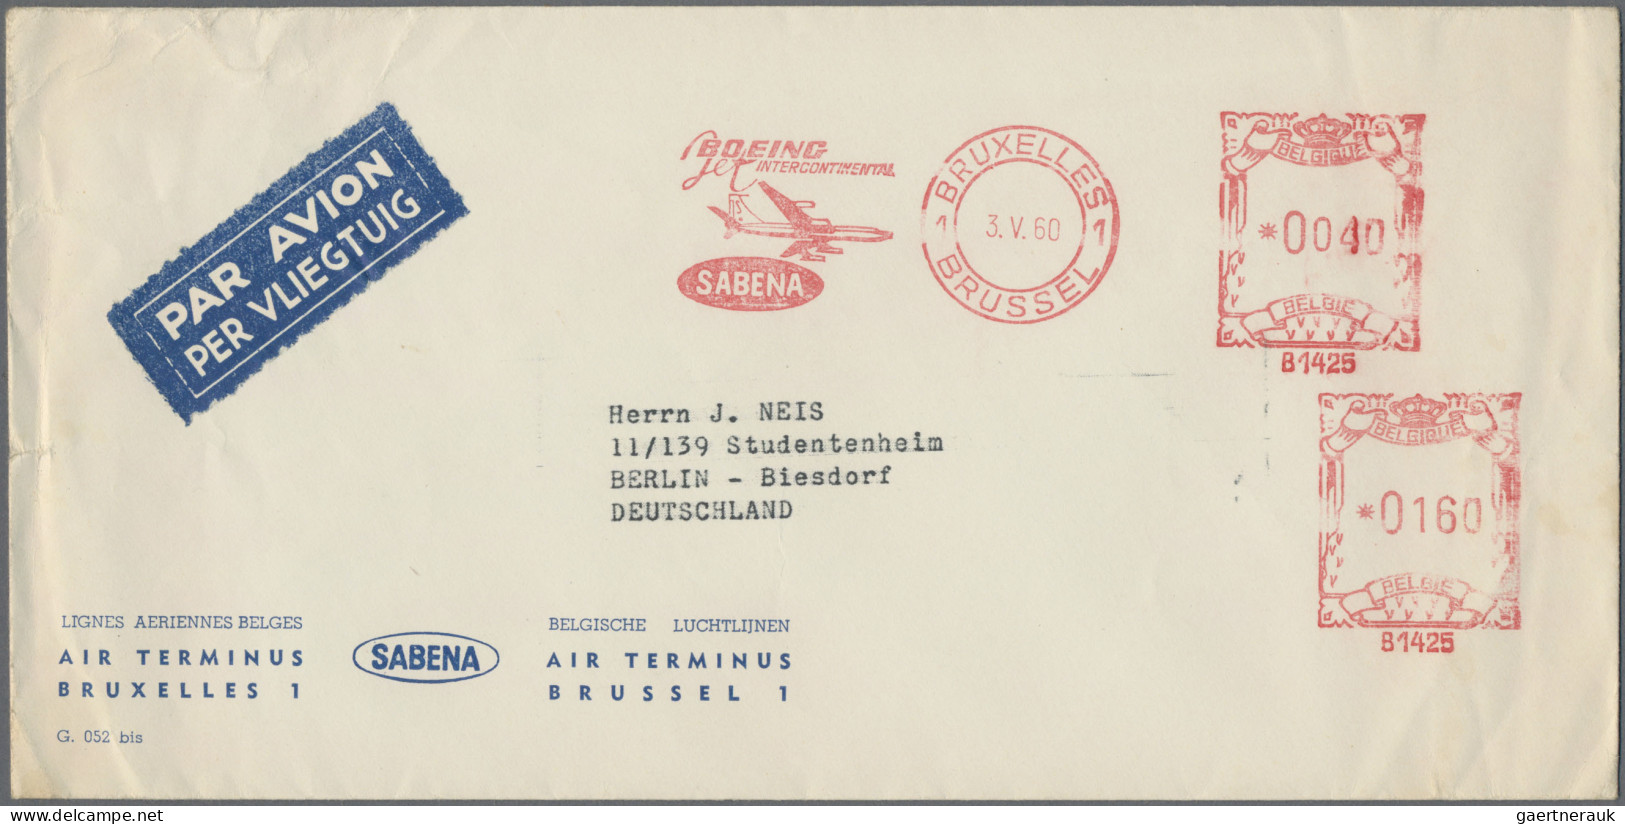 Air Mail - Germany: 1956/1990, vielseitiger Posten von ca. 460 Briefen und Karte